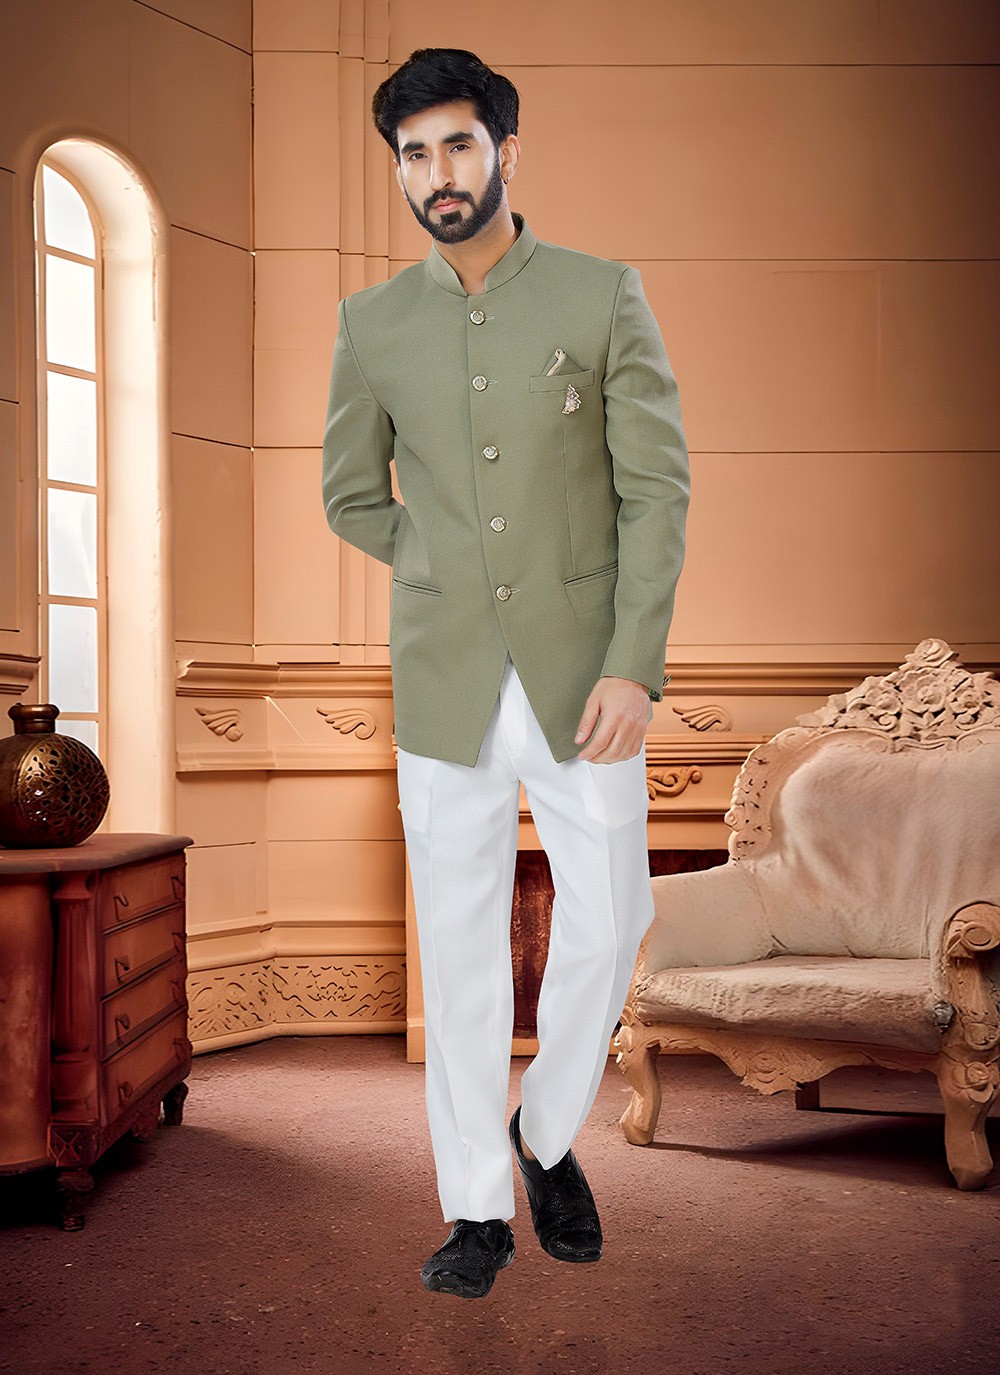 Checks Pattern Light Green Colored Jodhpuri Suit, Latest Designer Coat suits  for Men, La… | Fashion suits for men, Men fashion casual shirts, Jodhpuri  suits for men